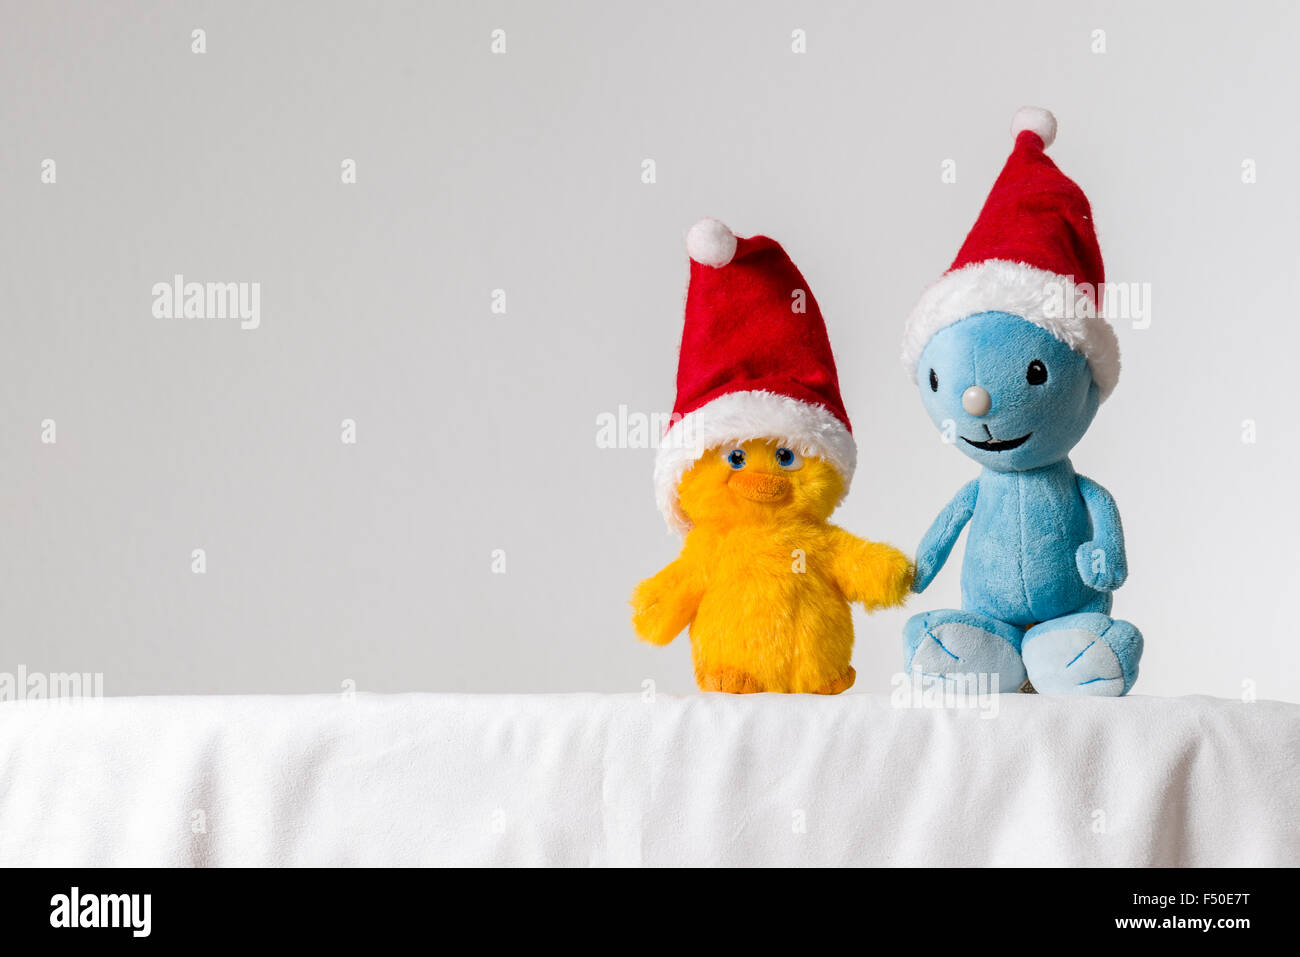 Una luz azul y amarillo de peluche, vistiendo gorros de Santa Claus, están sentados juntos en una mesa blanca Foto de stock